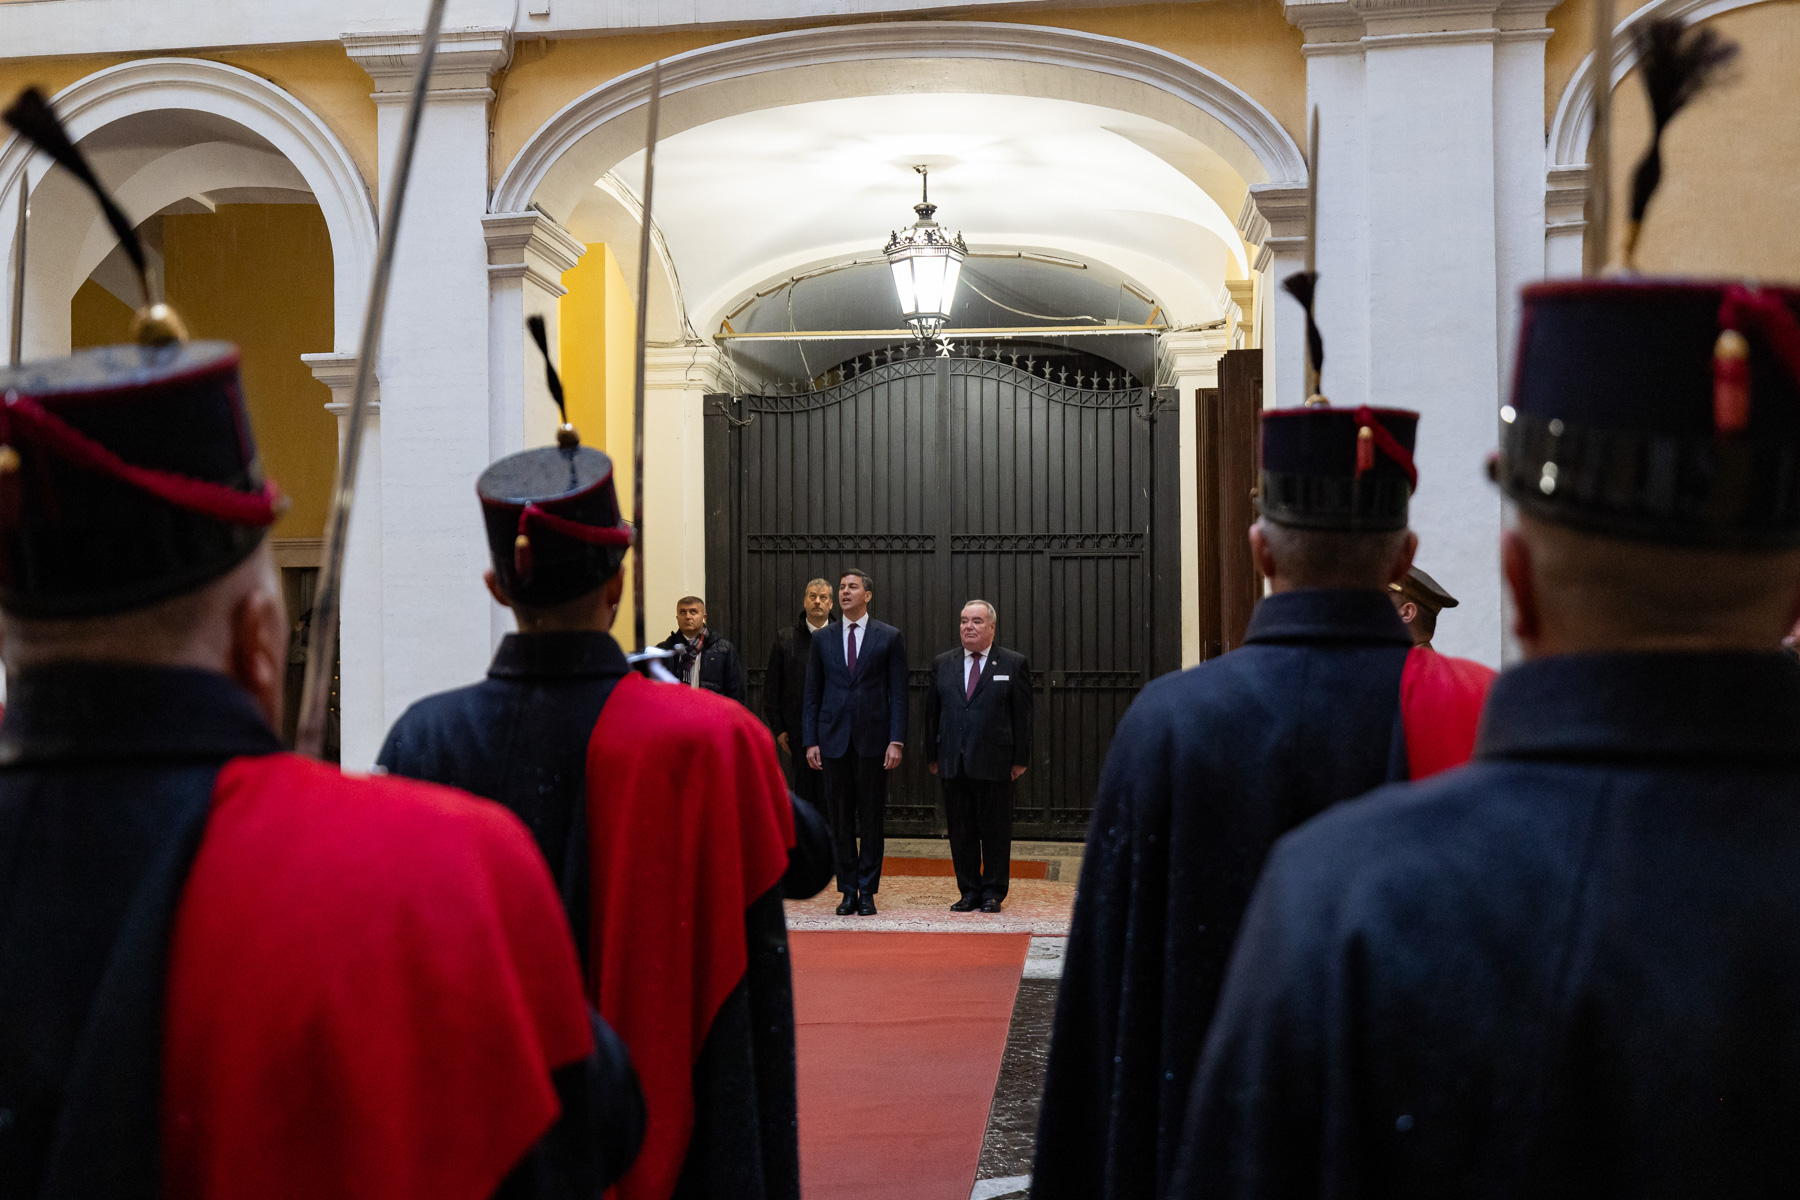 Il Presidente del Paraguay ricevuto in visita ufficiale dal Gran Maestro del Sovrano Ordine di Malta